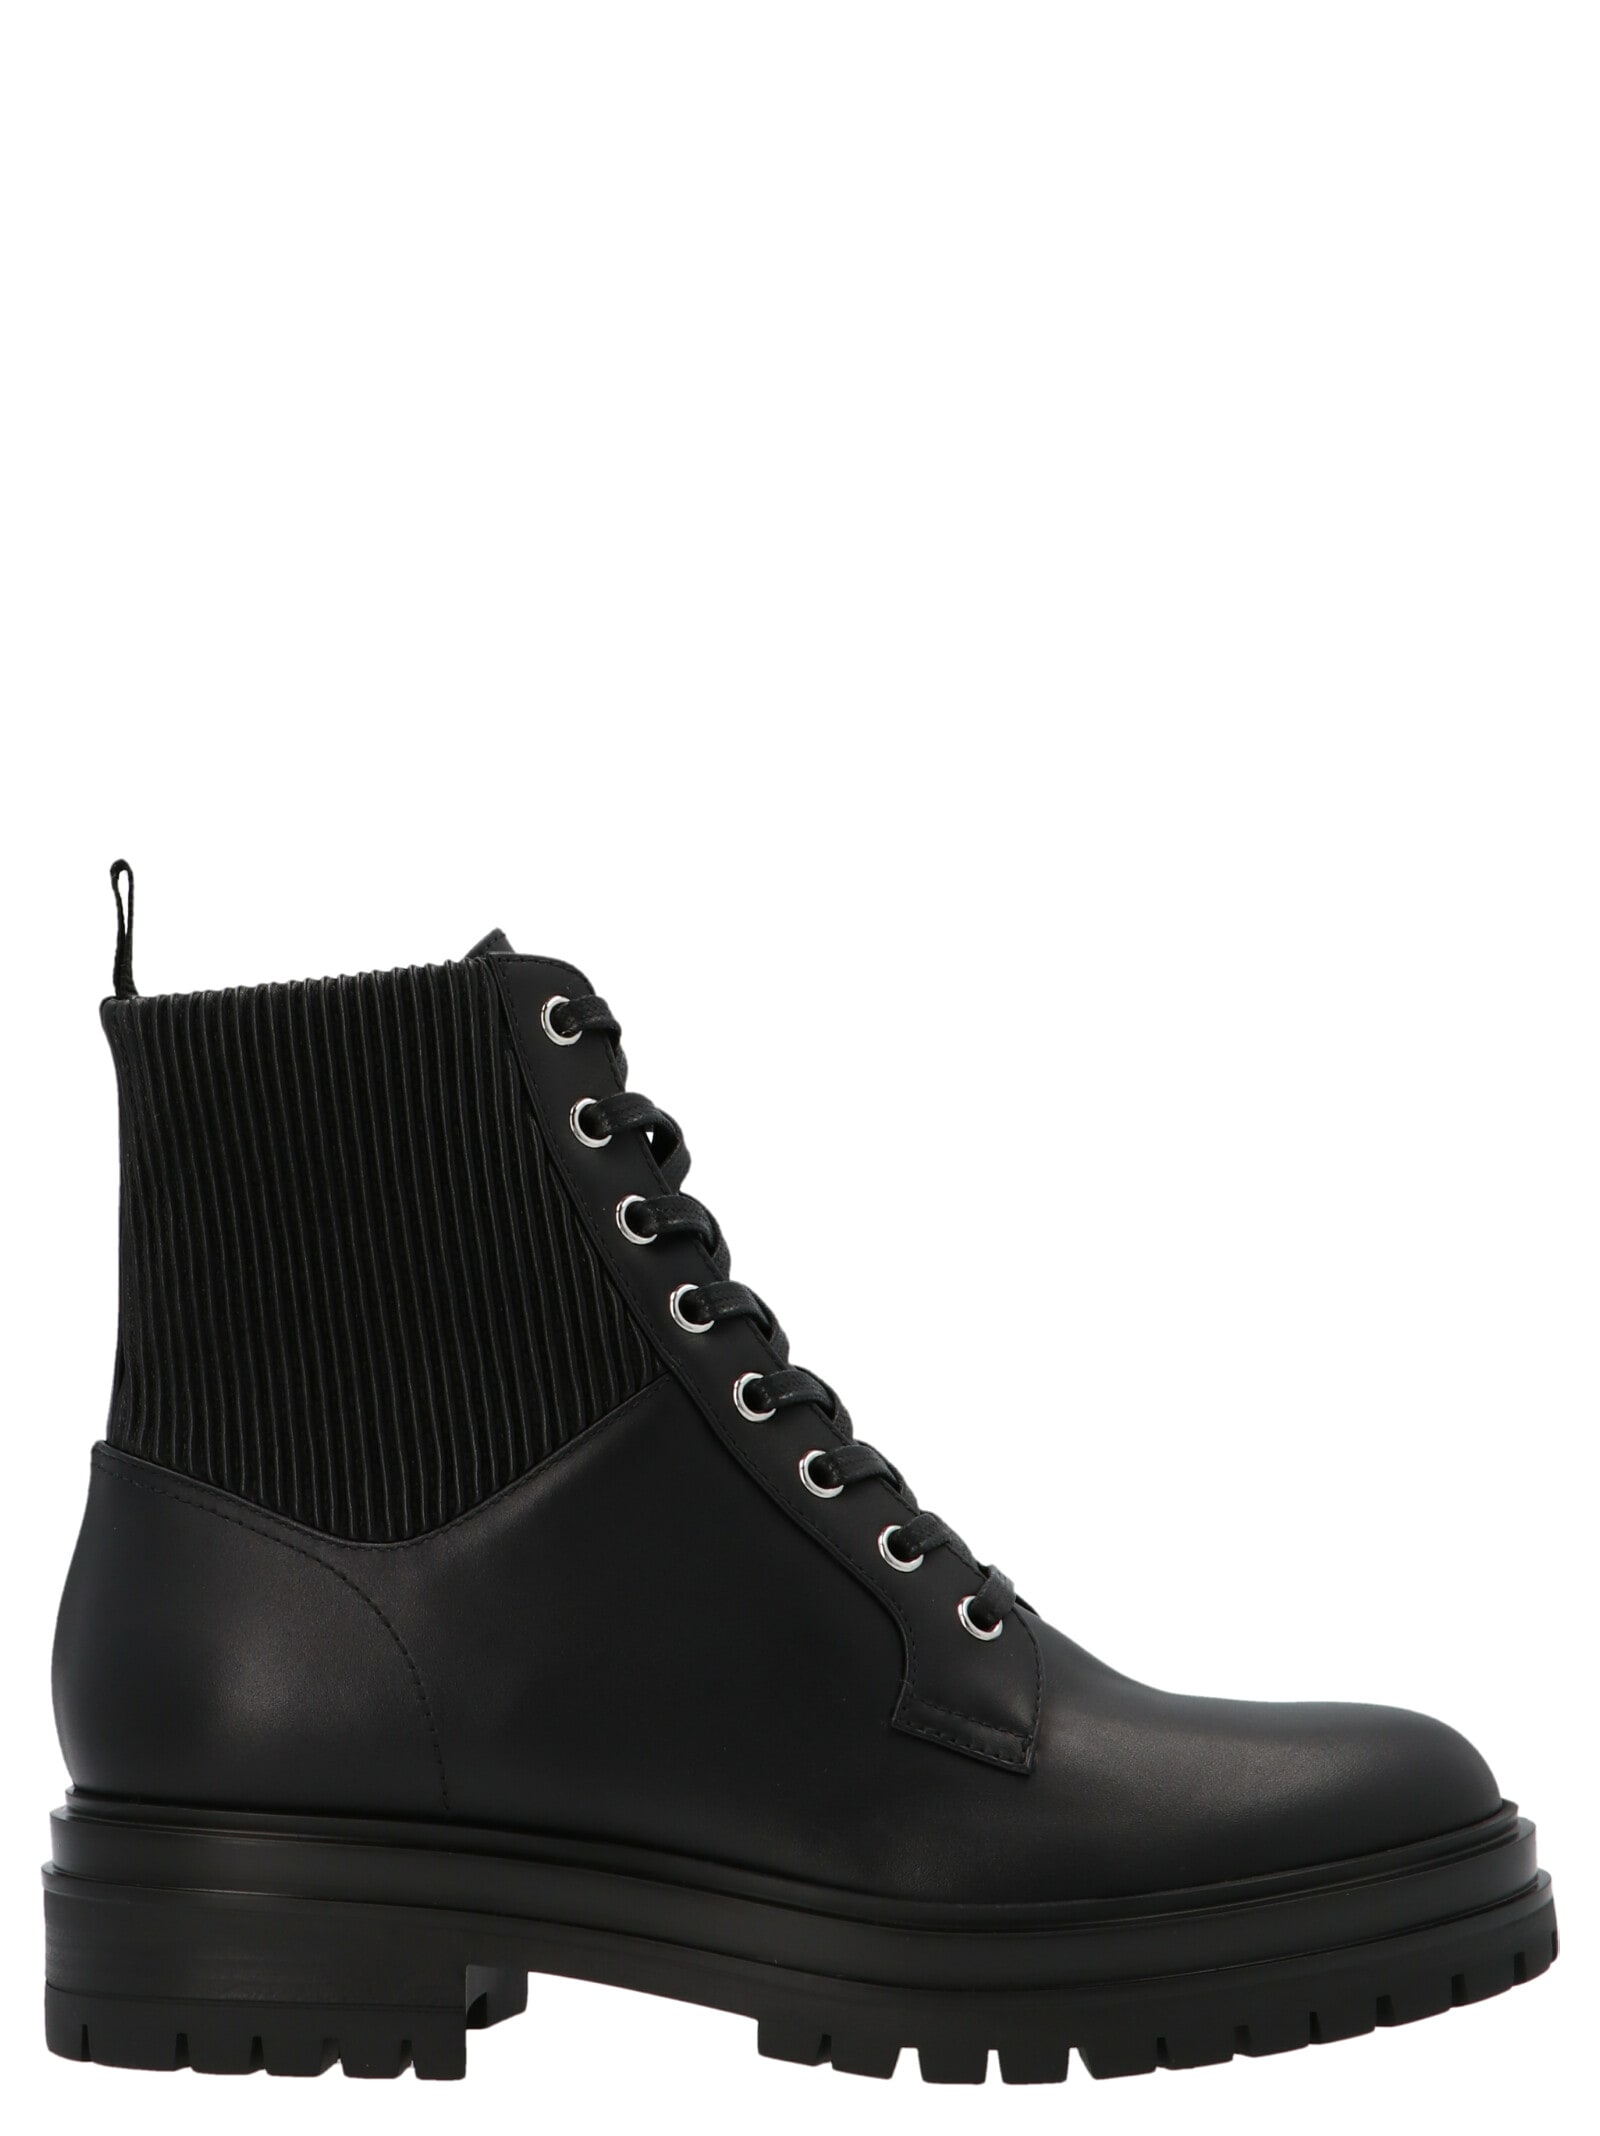 Shop Gianvito Rossi Martis Combat Boots In Calf+eco Stretch Black+black